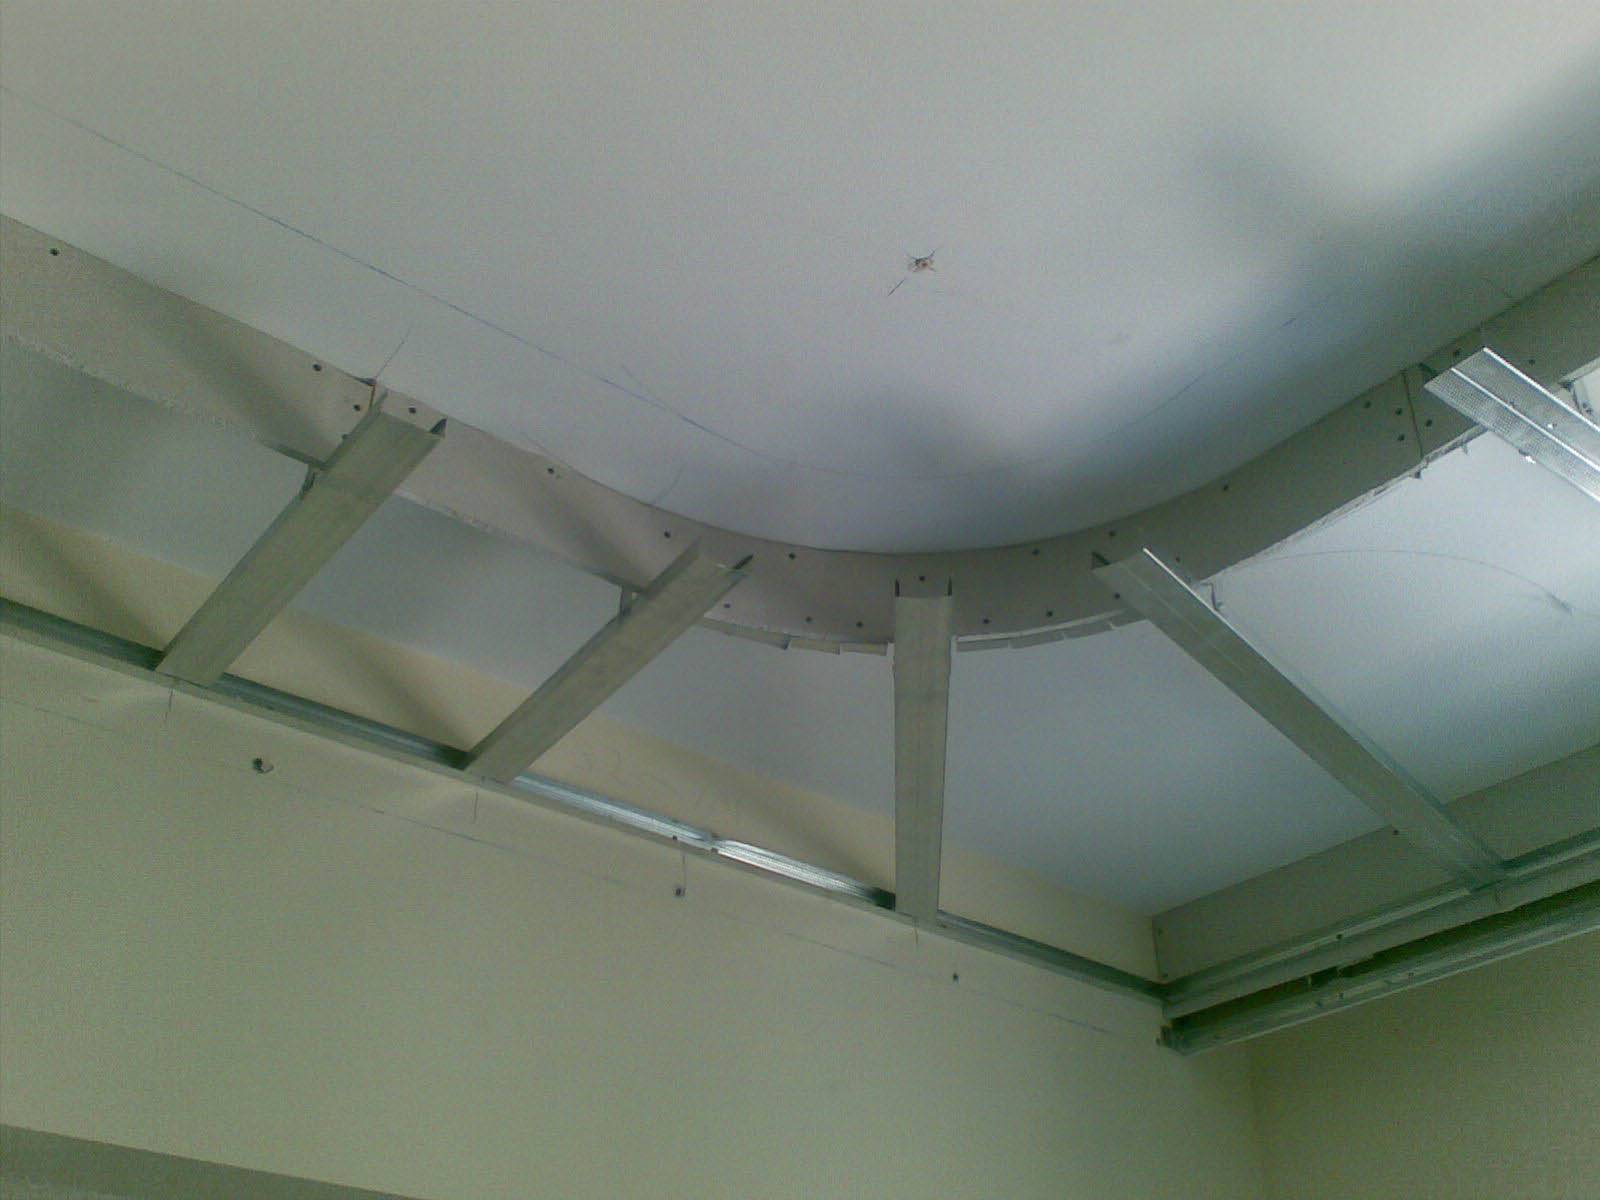 Двухуровневый потолок из гипсокартона своими руками | gipsportal
этапы изготовление двухуровневого гипсокартонного потолка — gipsportal